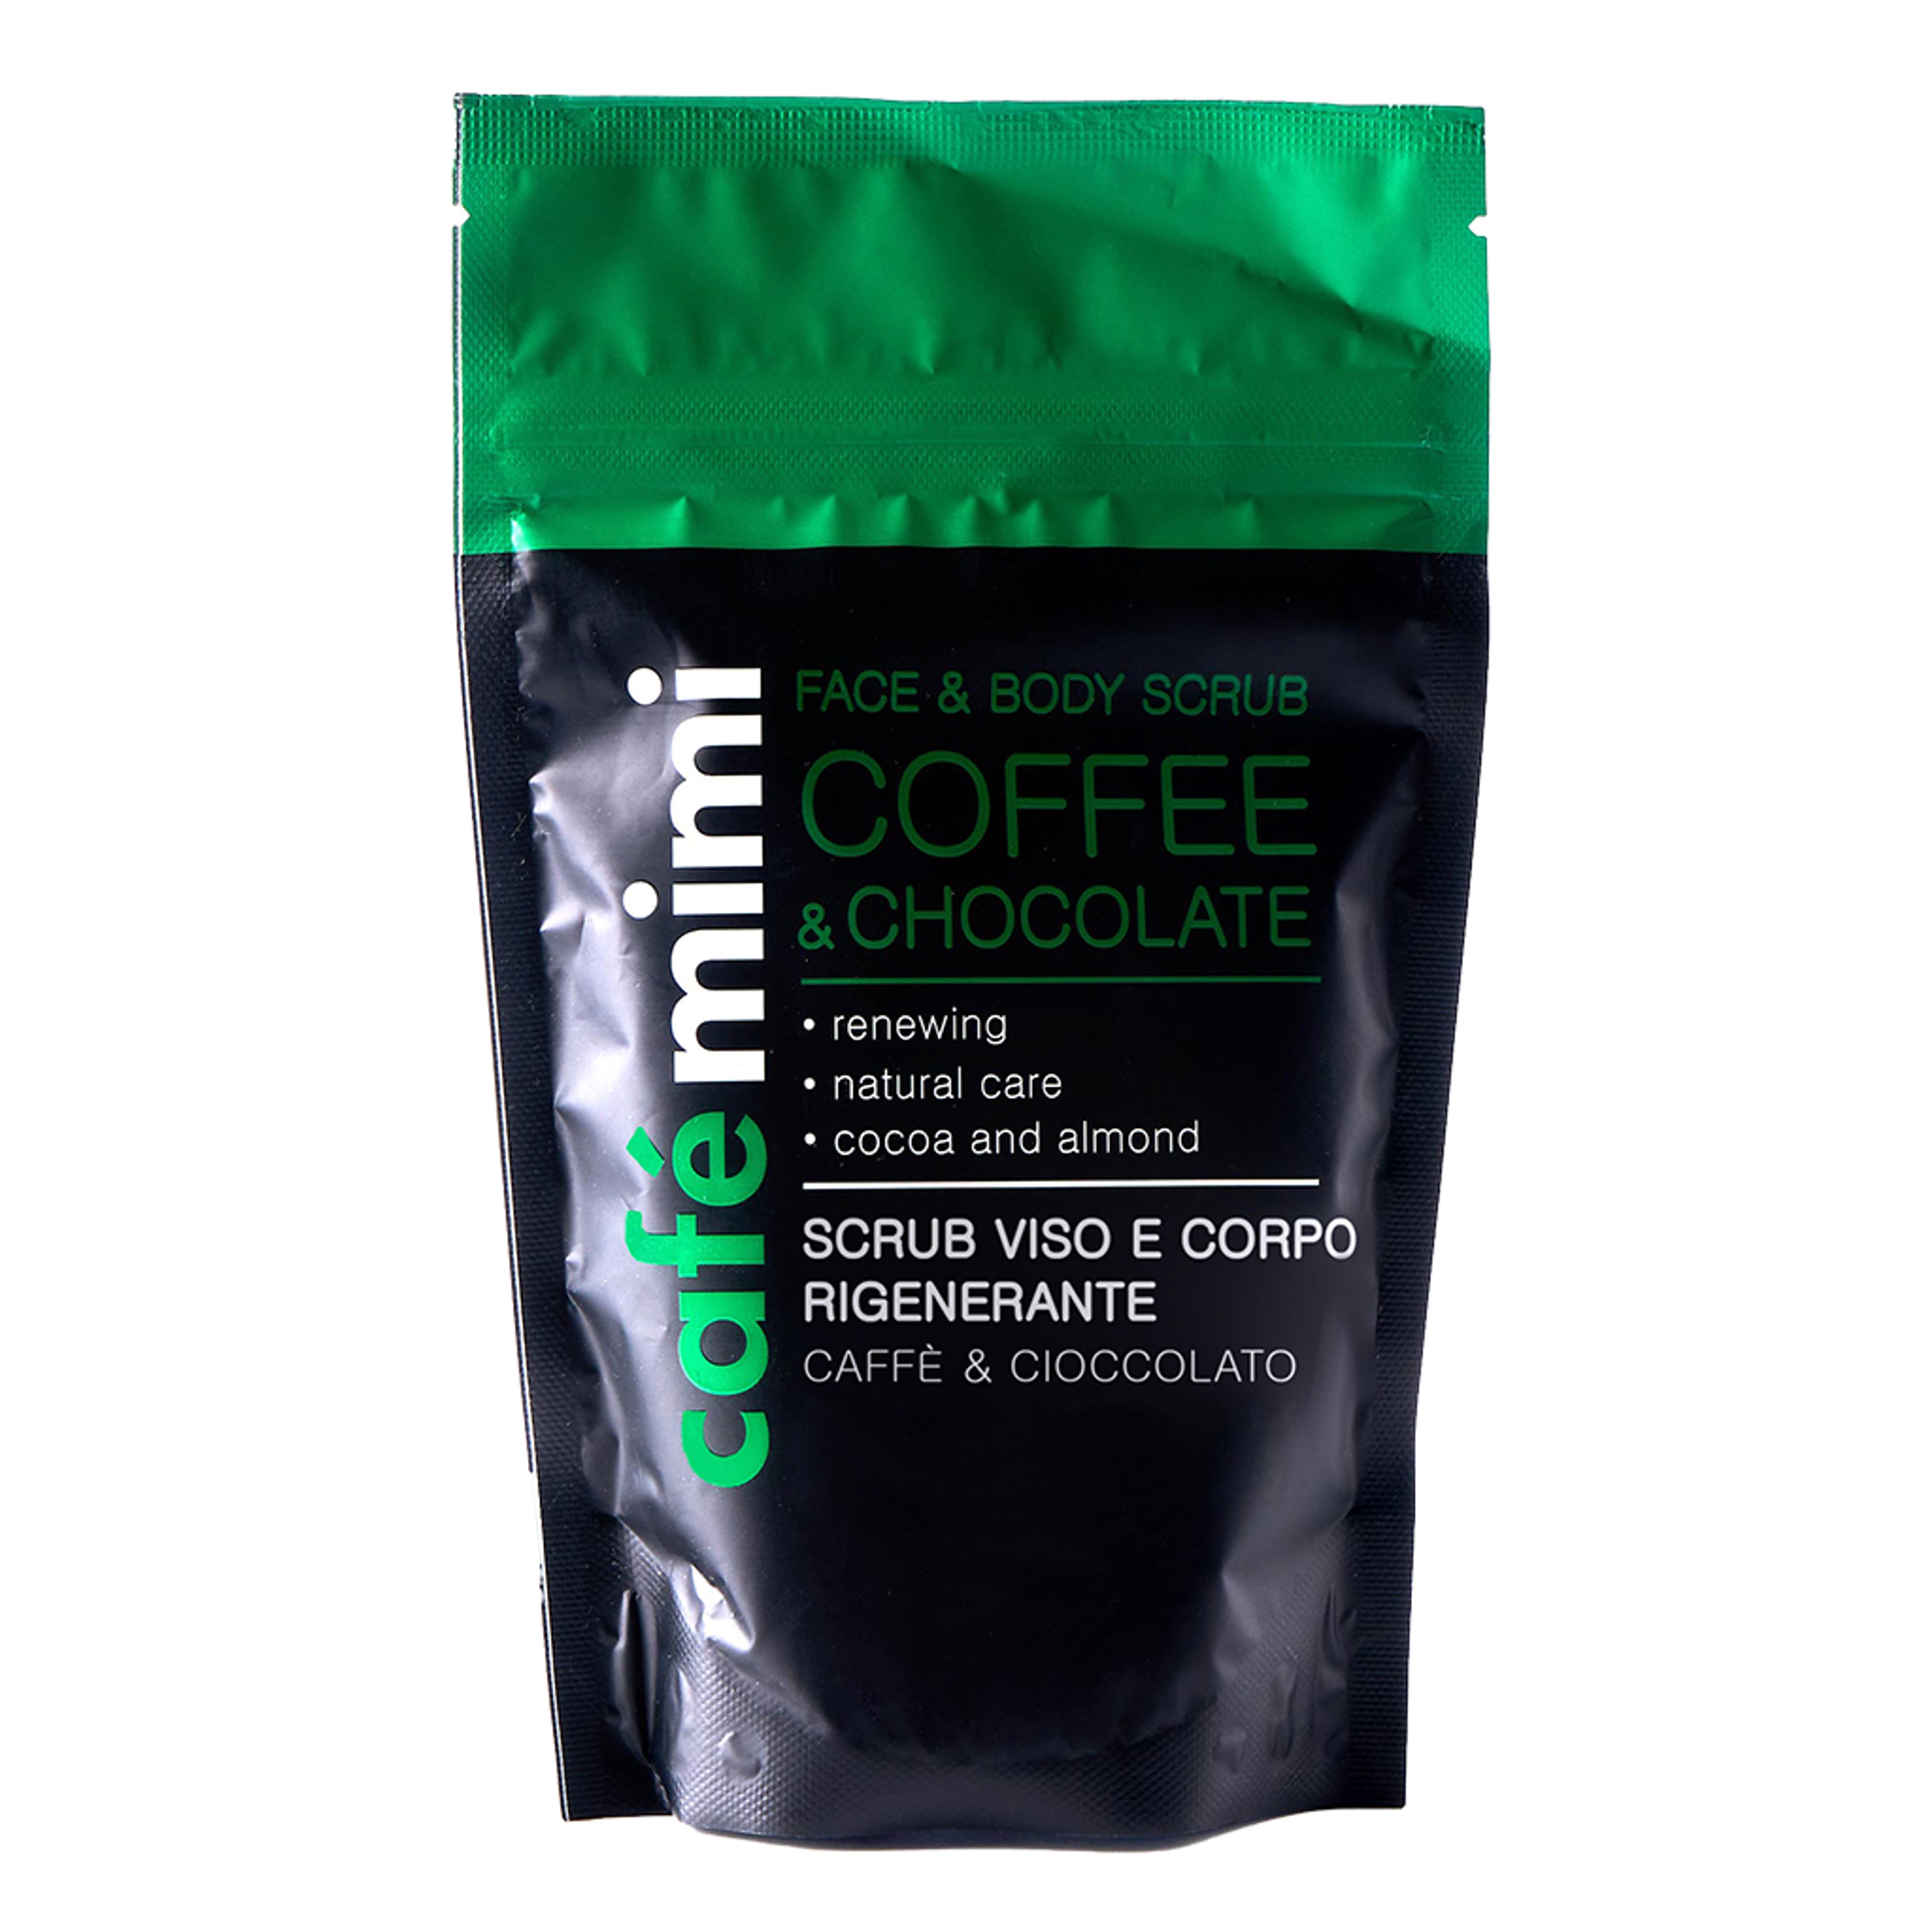 Café Mimi Scrub Viso E Corpo Rigenerante
caffè & Cioccolato 1